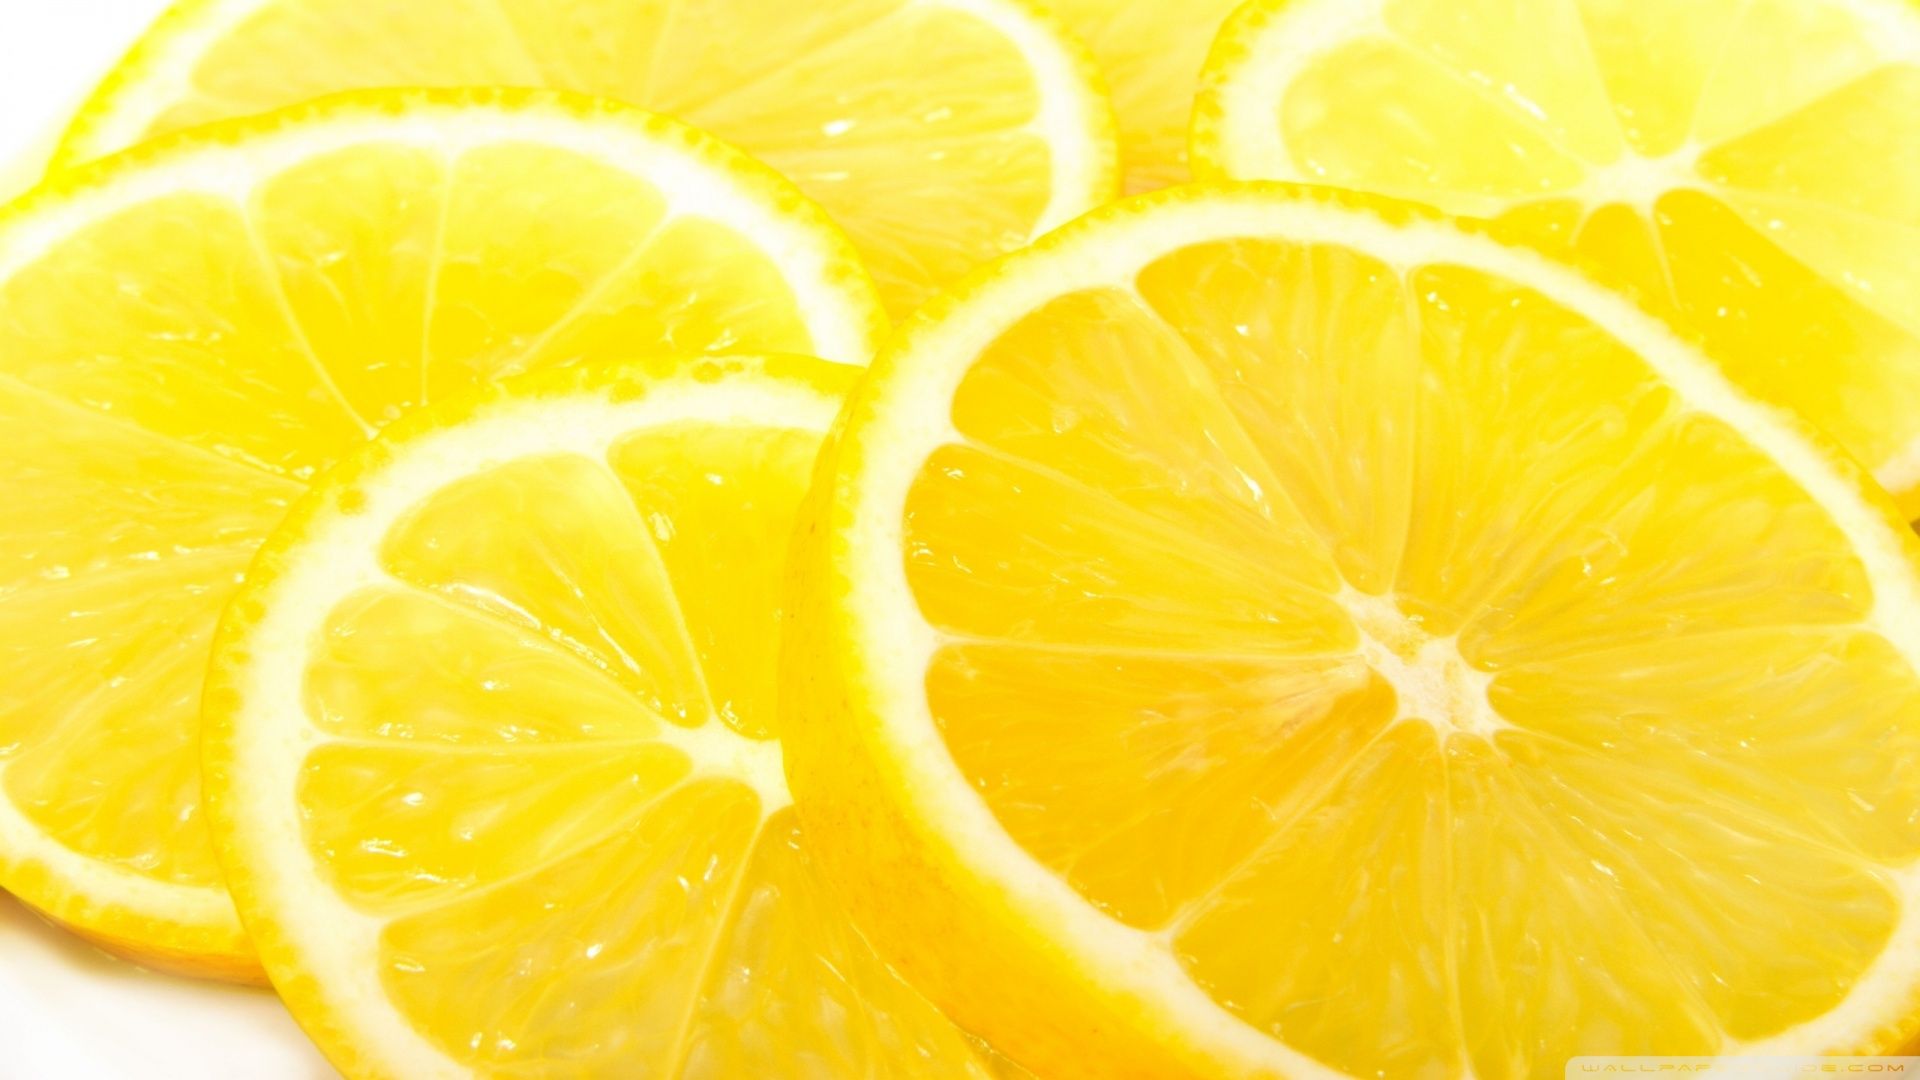 Lemon slices on a white background - Lemon